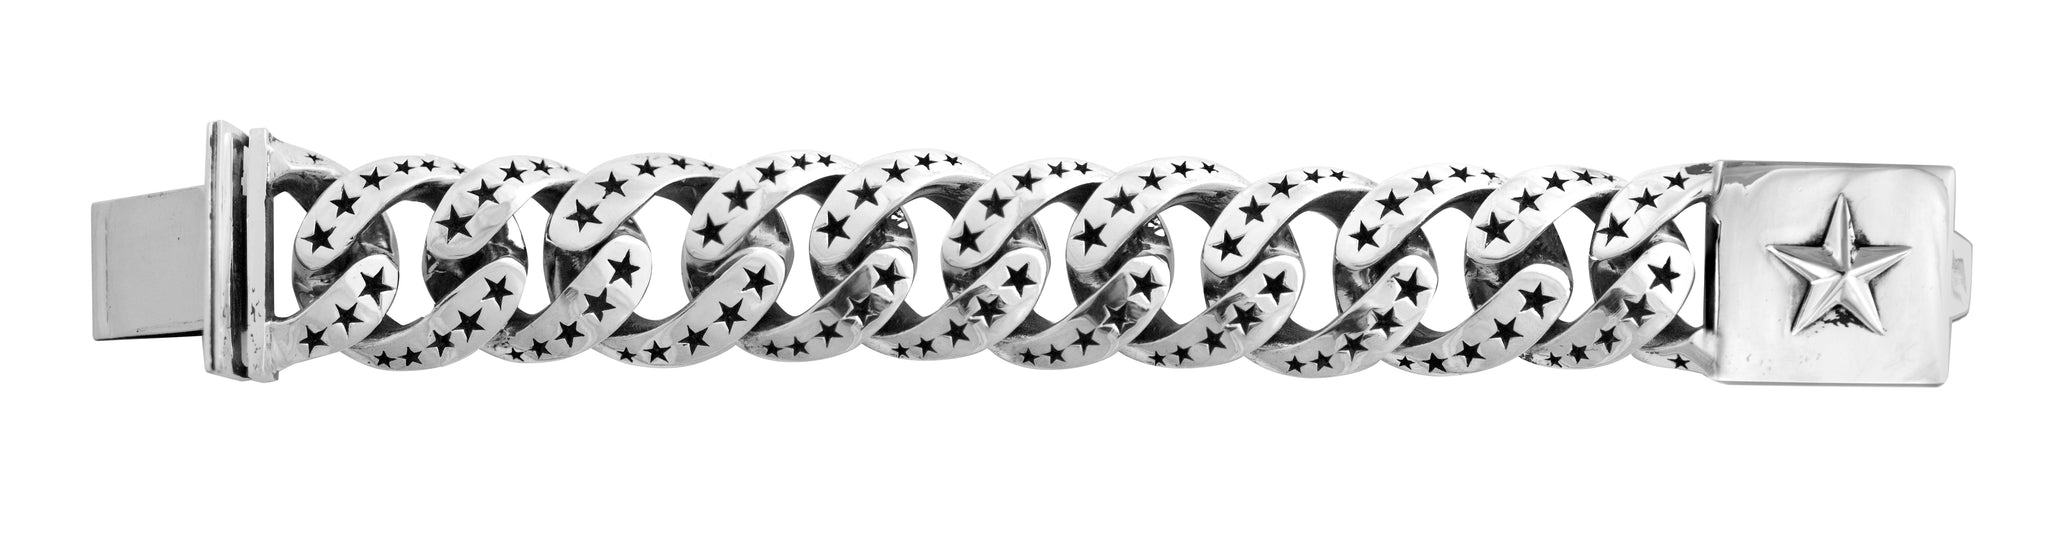 EXTRA LARGE LINK NEW STARS Men's Sterling Link Bracelet With Star